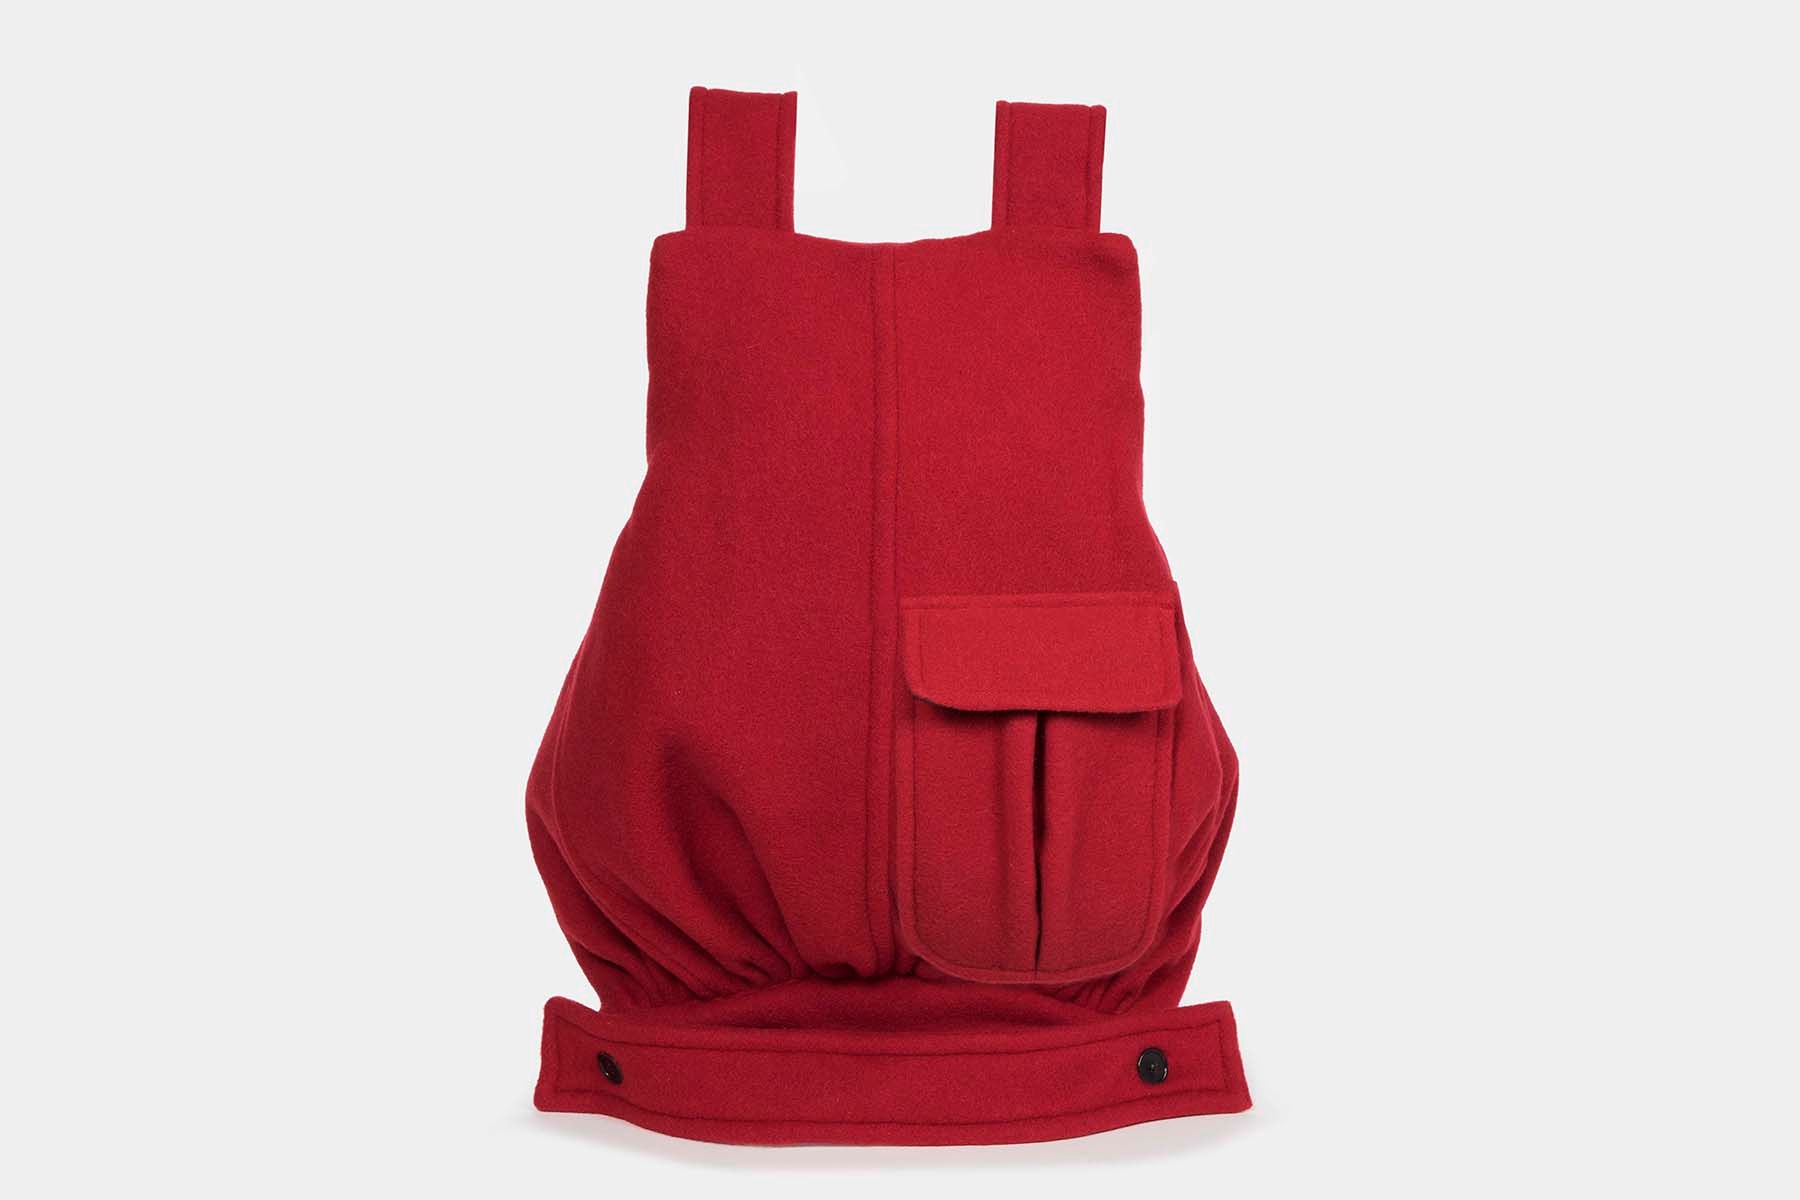 라프 시몬스 2018 가을 겨울 컬렉션 협업 백팩 가방